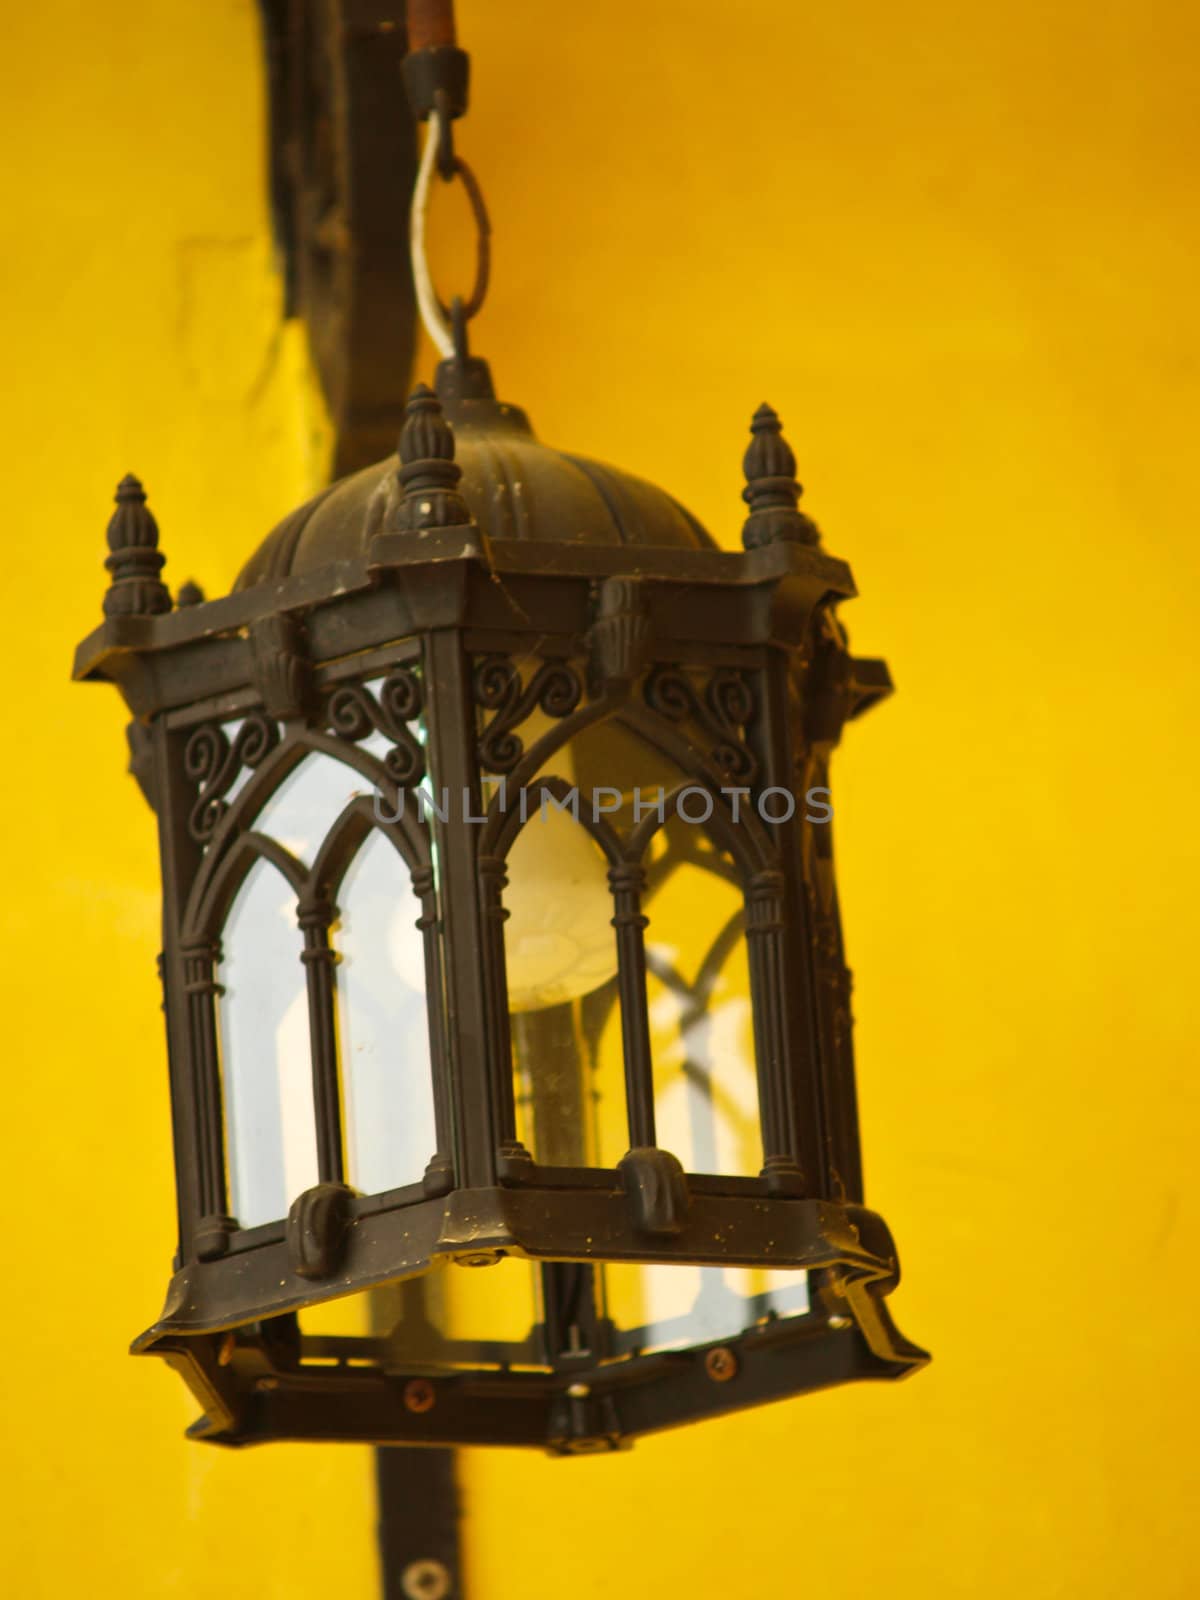 Antique bronze lantern on yellow background by gururugu